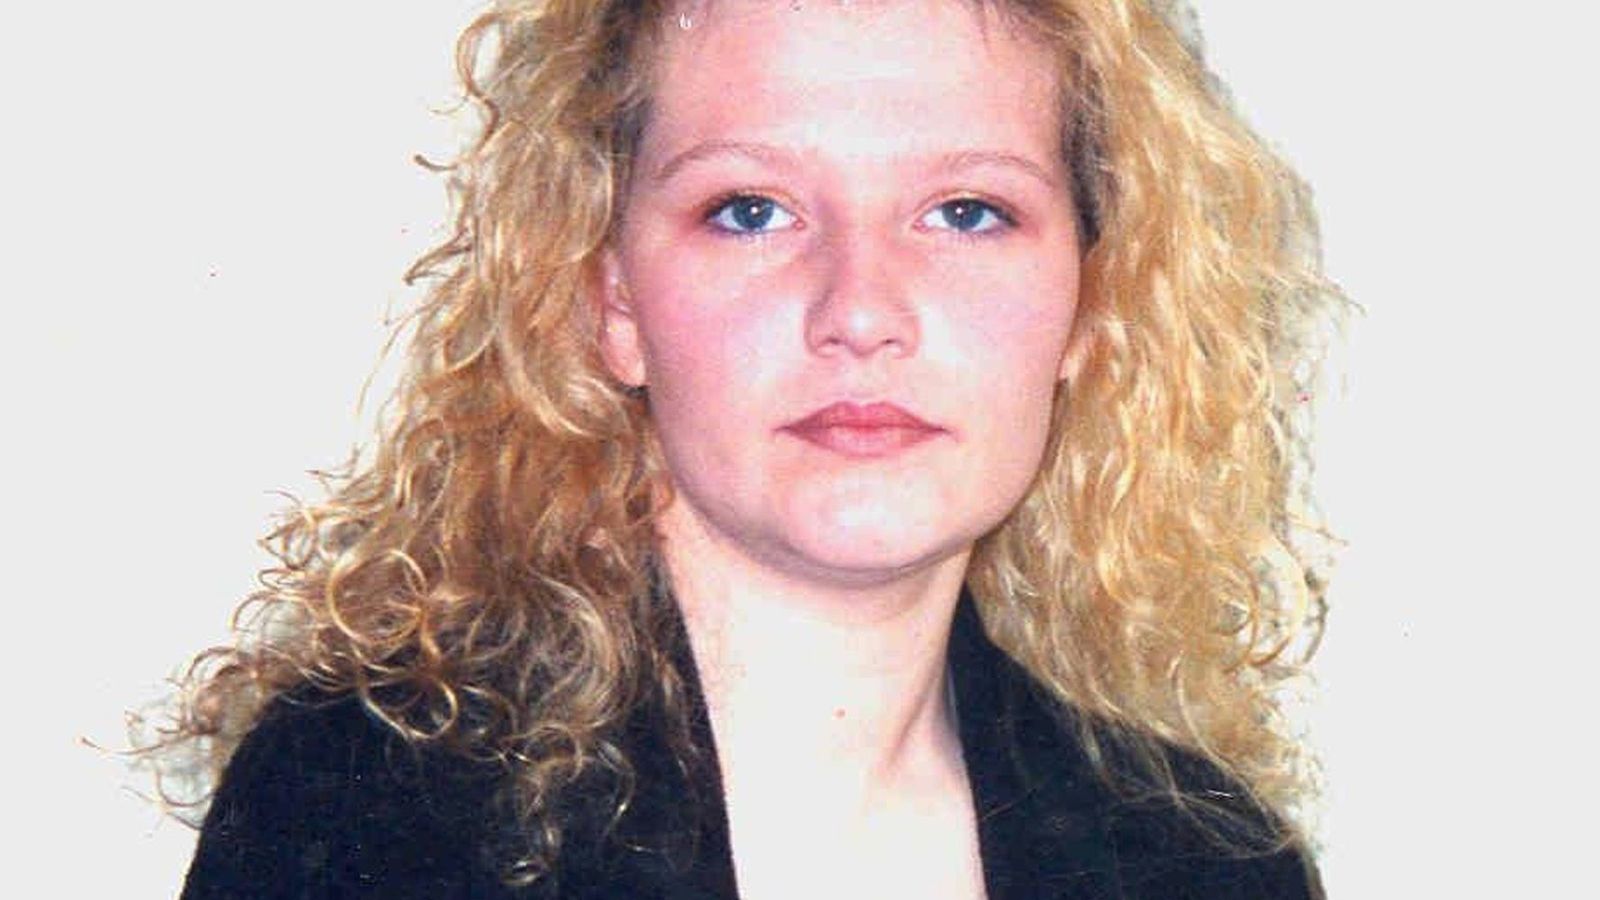 Убийството на Ема Колдуел: Заподозреният Иън Пакър е отвел предполагаемата жертва до района, където е намерено тялото няколко пъти, каза съдът